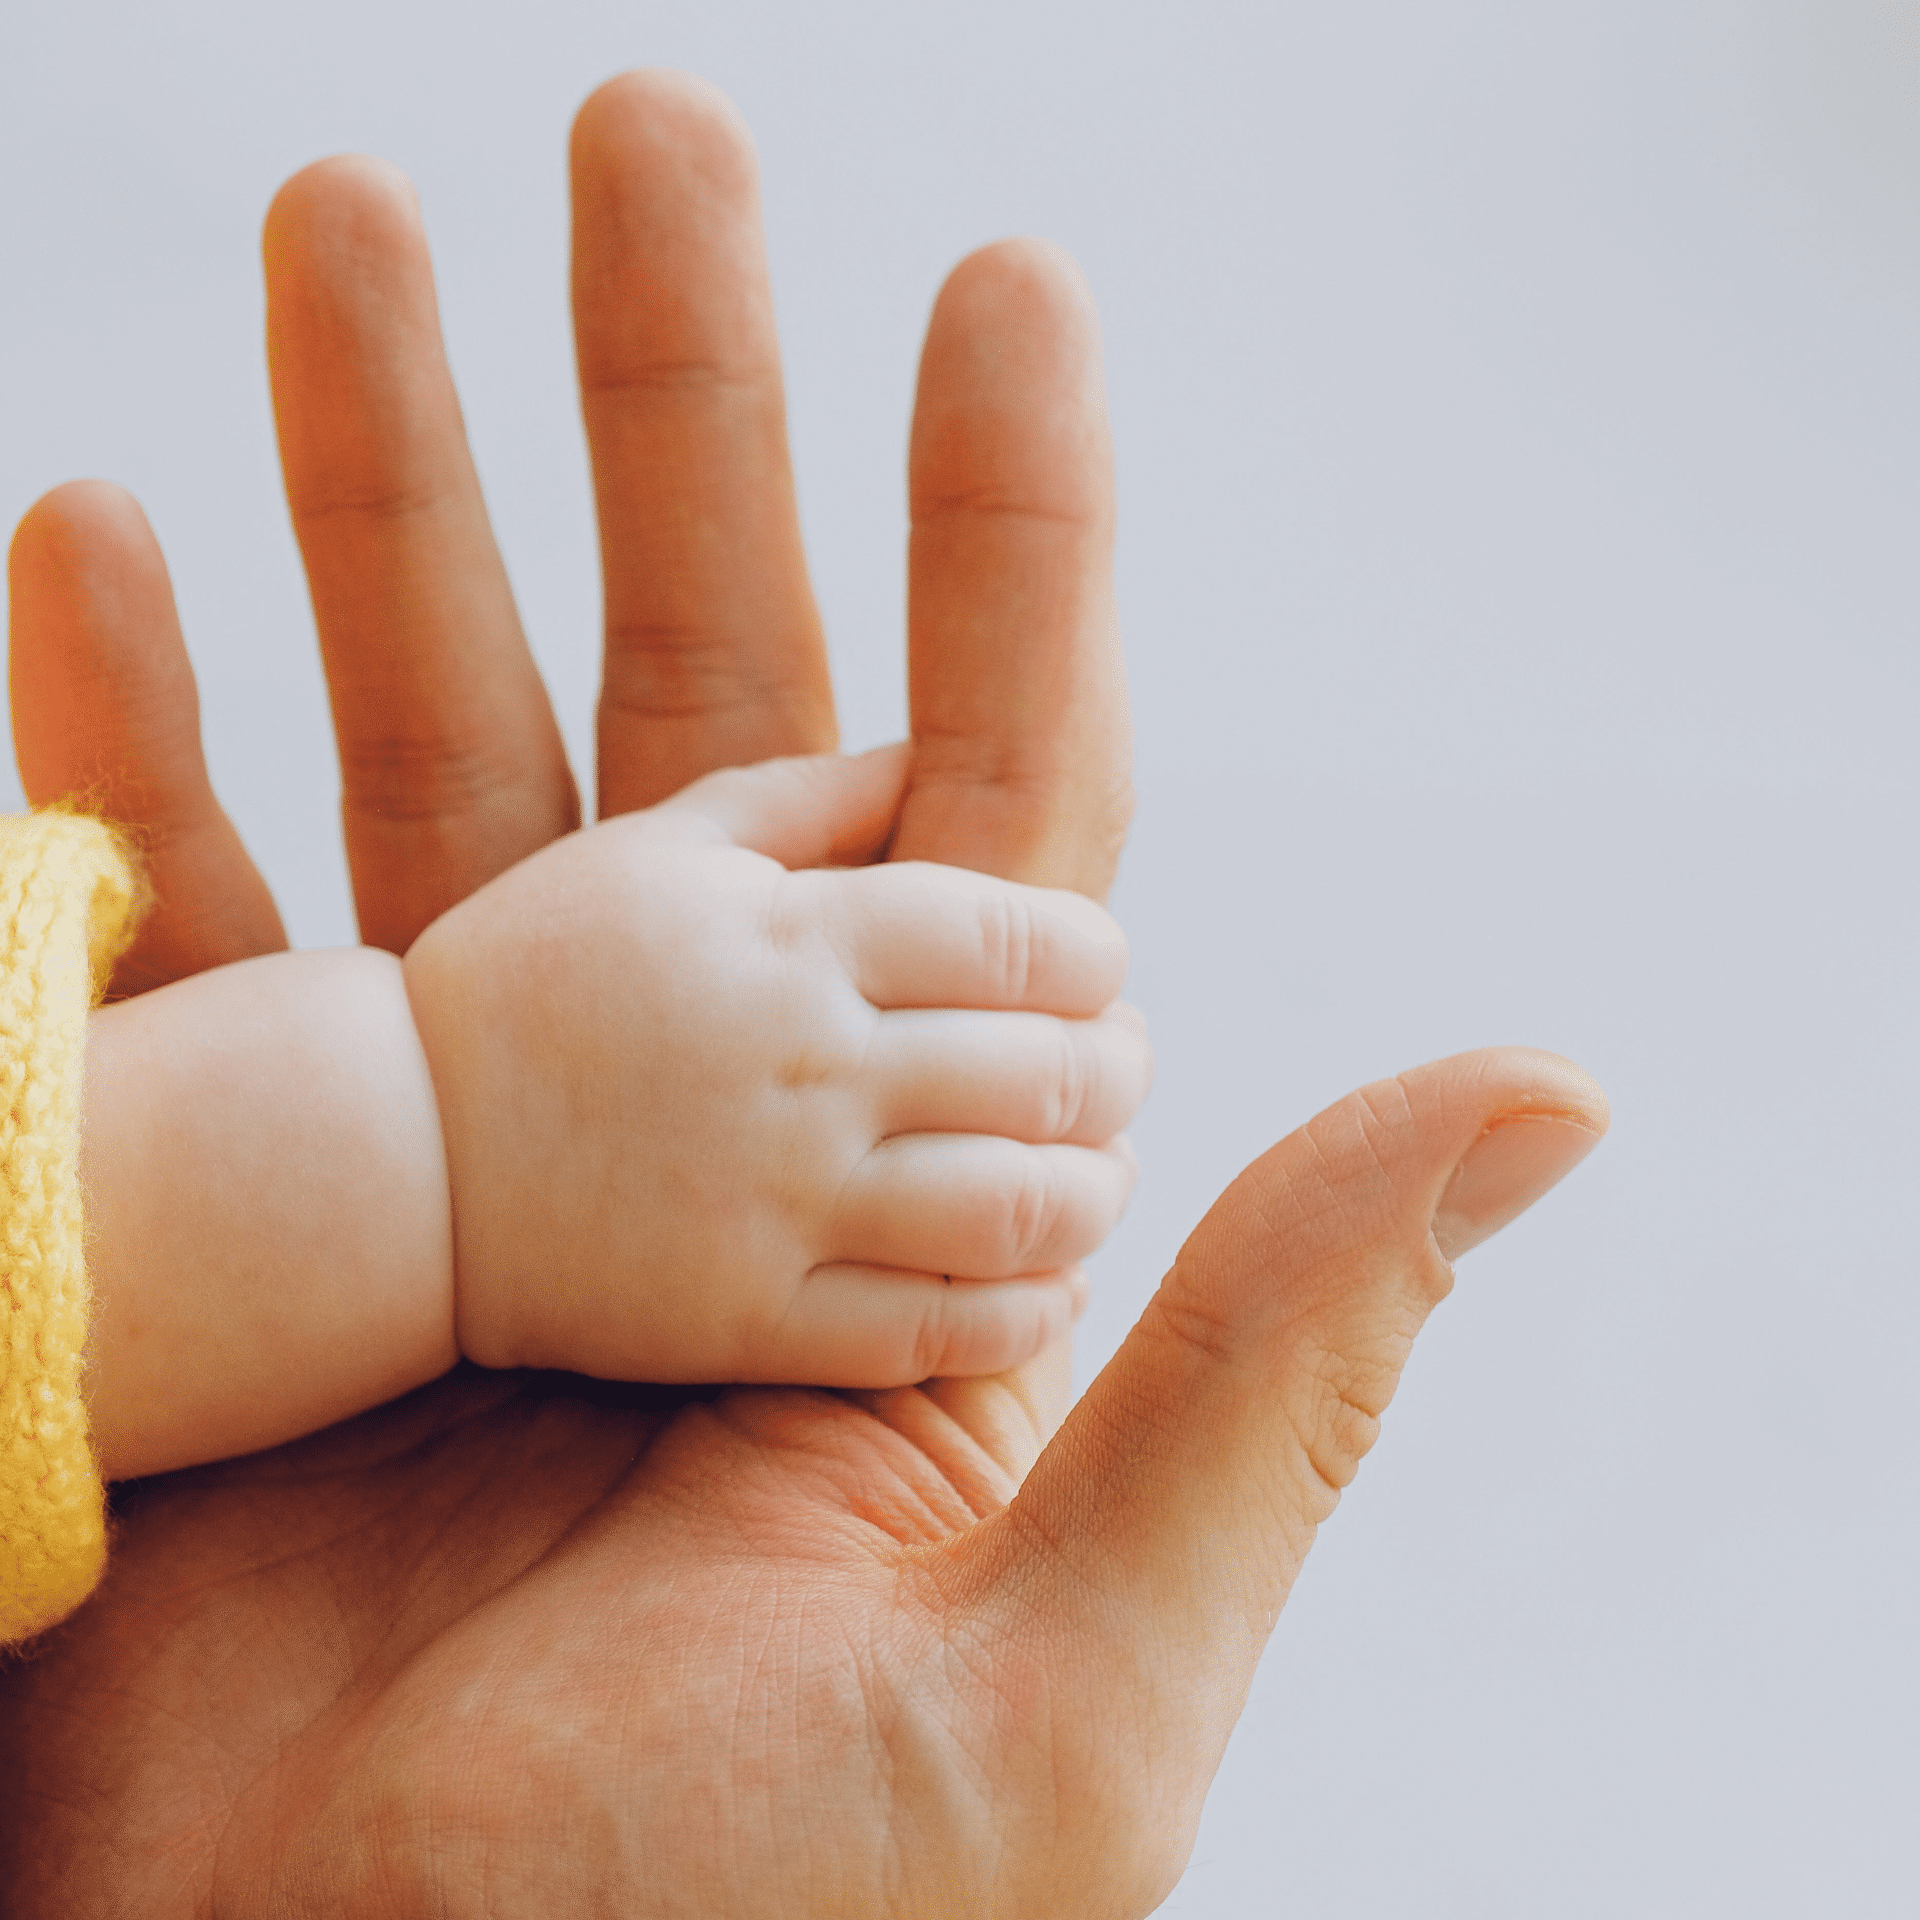 El Tribunal Supremo ha rechazado ampliar la prestación por nacimiento y cuidado del menor en familias monoparentales